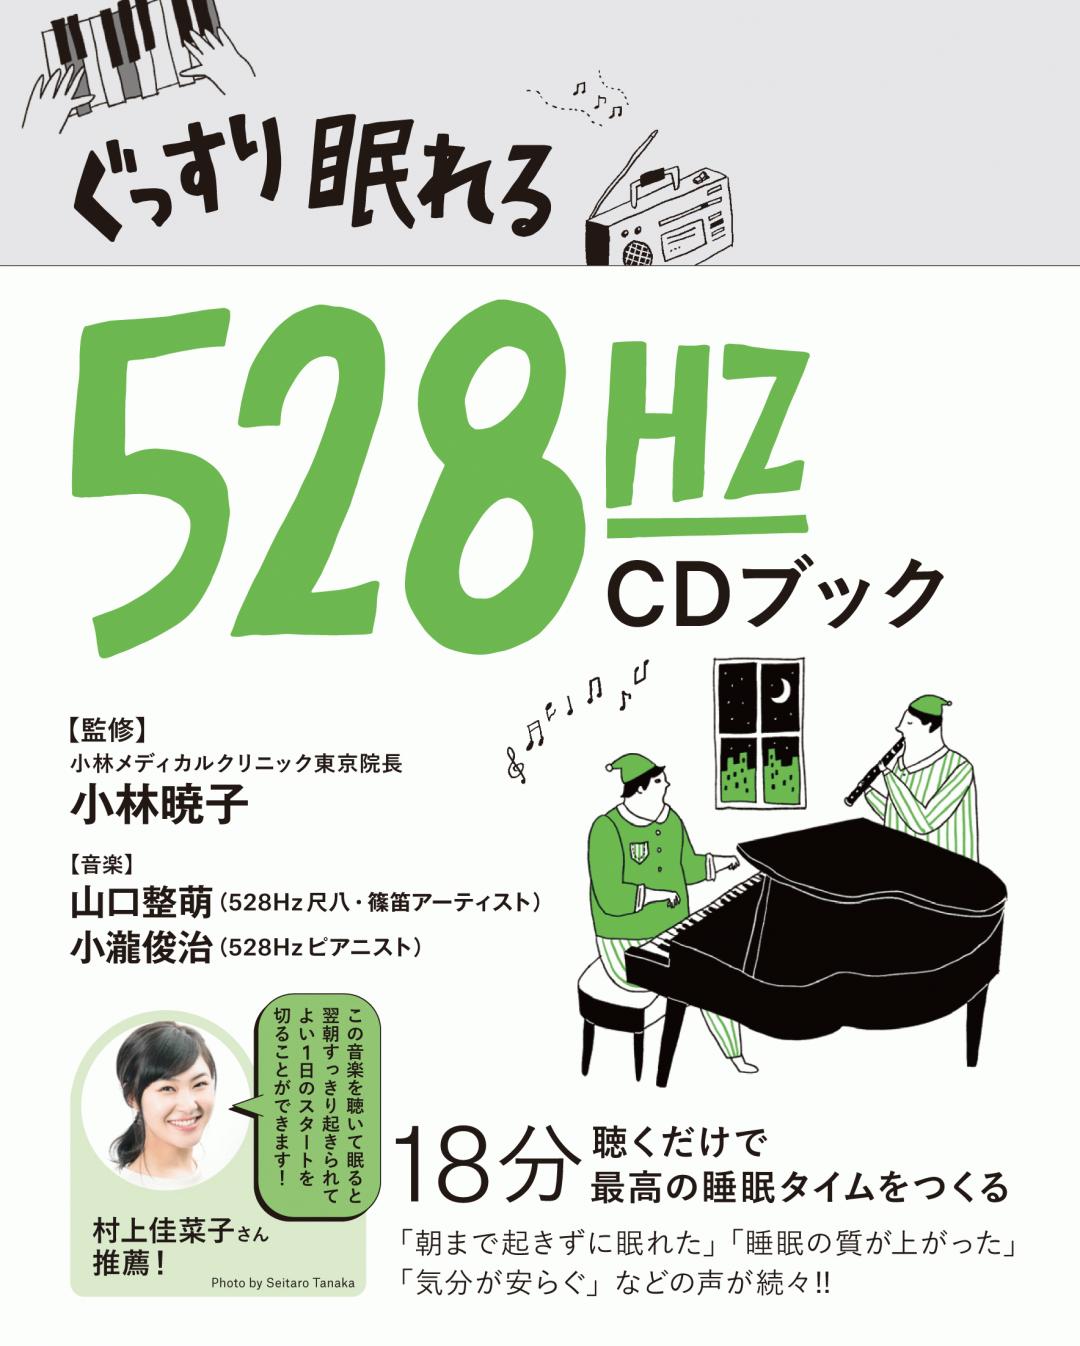 ぐっすり眠れる528Hz CDブック | Transworld Japan | トランスワールド